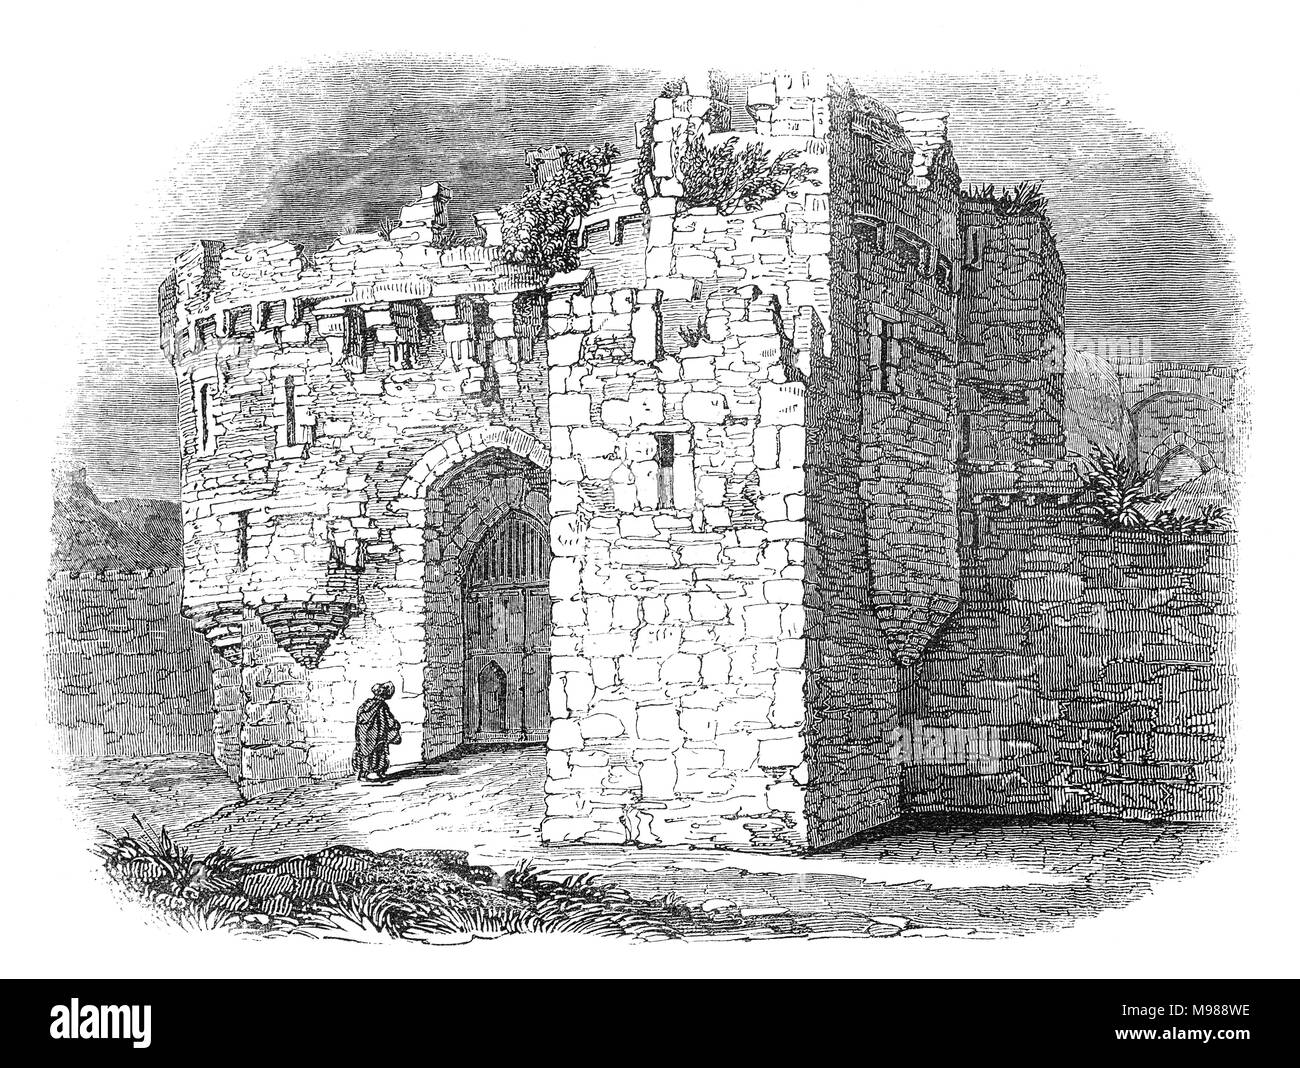 Beaumaris Castle è situato nella città dello stesso nome sull'Isola di Anglesey nel Galles, è stato costruito come parte di Edward Ho la campagna per conquistare il nord del Galles dopo 1282. Il castello fu preso da forze gallese nel 1403 durante la ribellione di Owain Glyndŵr, ma è stata recuperata dalle forze reale nel 1405. Foto Stock